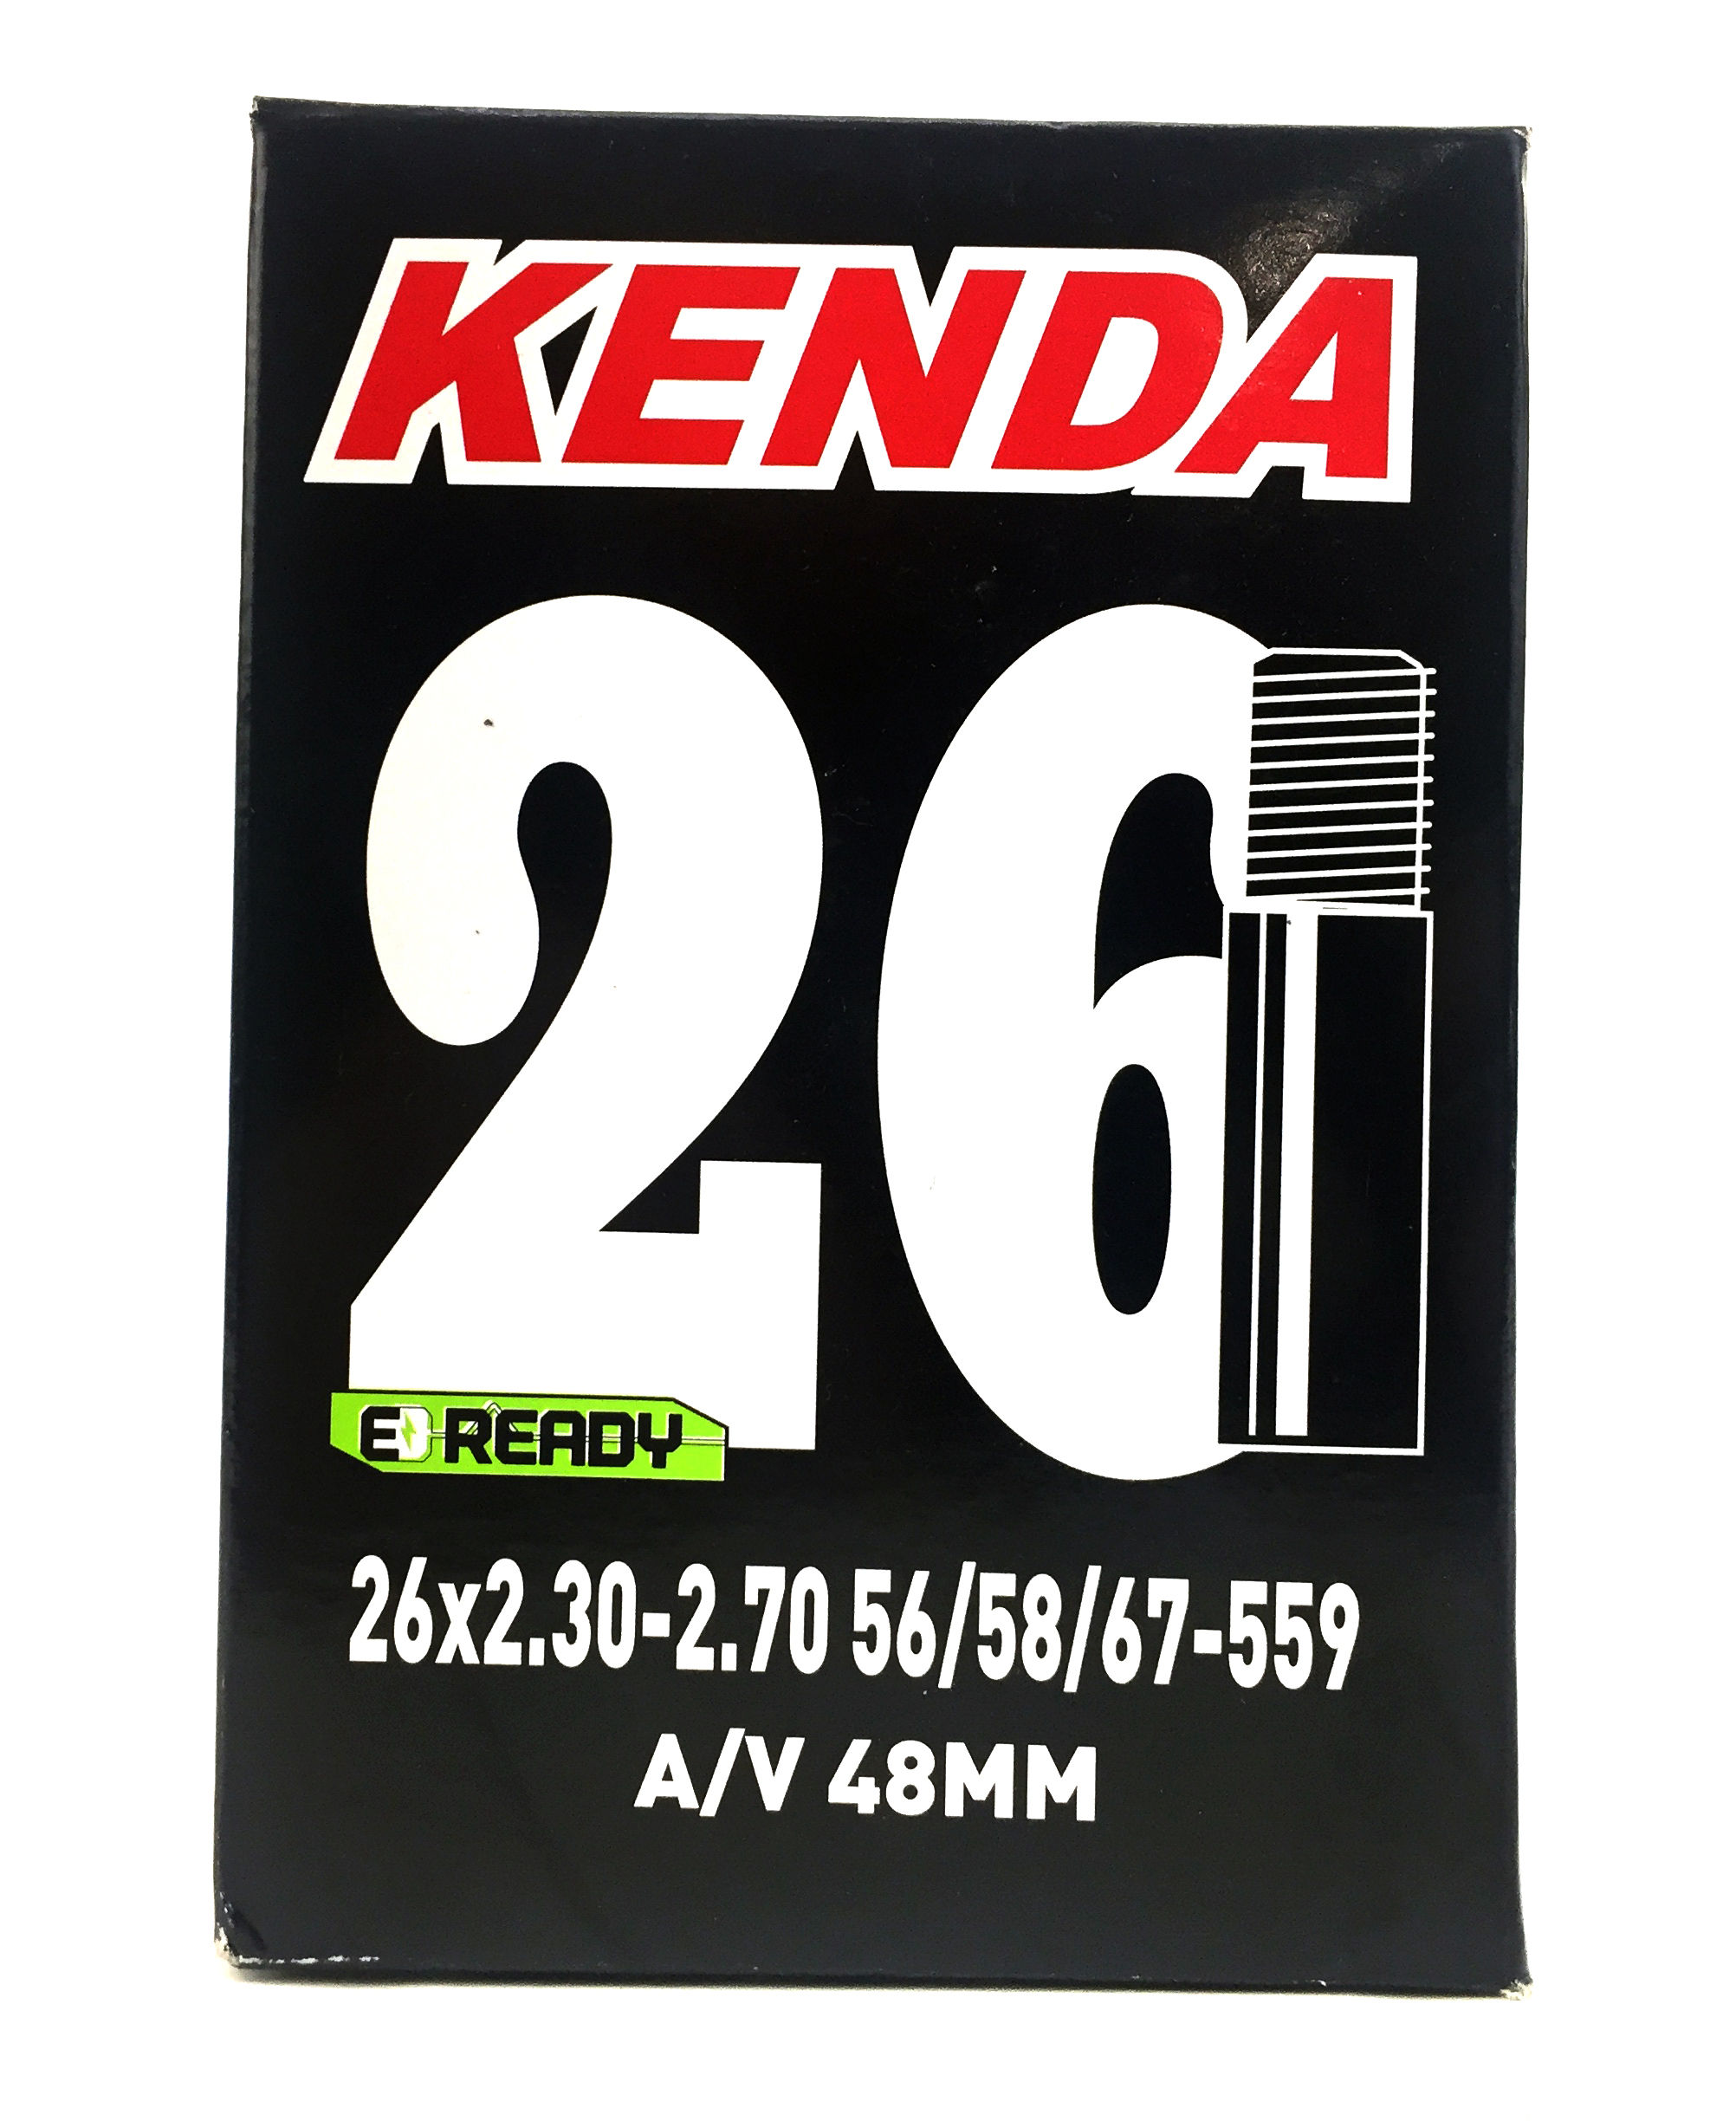 Камера Kenda 26 2.30-2.70 56/58/67-559 AV 48 мм (O-D-0046)